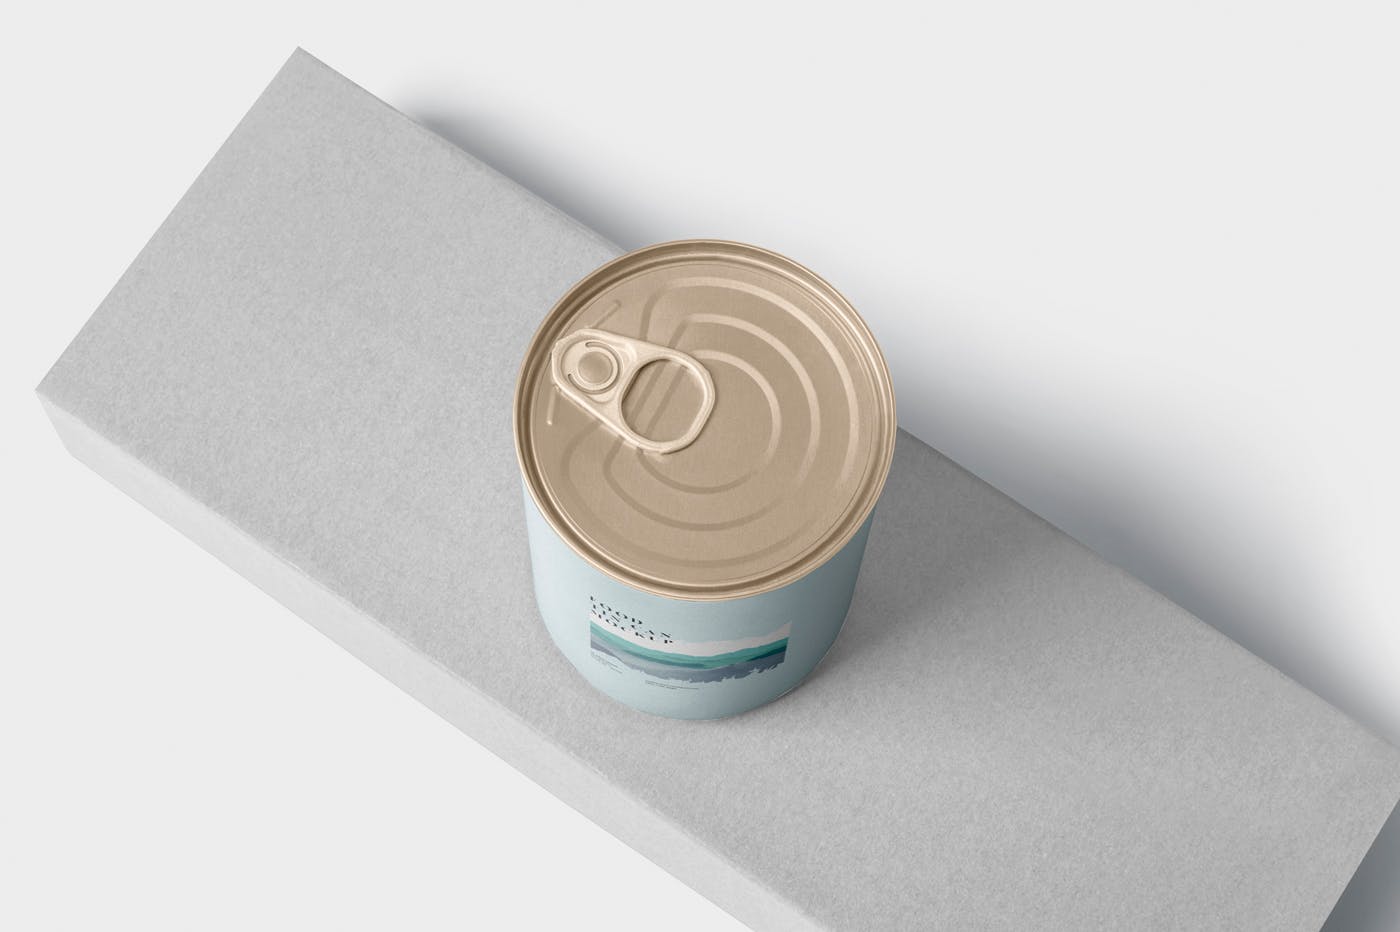 即食罐头包装外观设计样机模板 Food Tin Can Mockup插图(4)